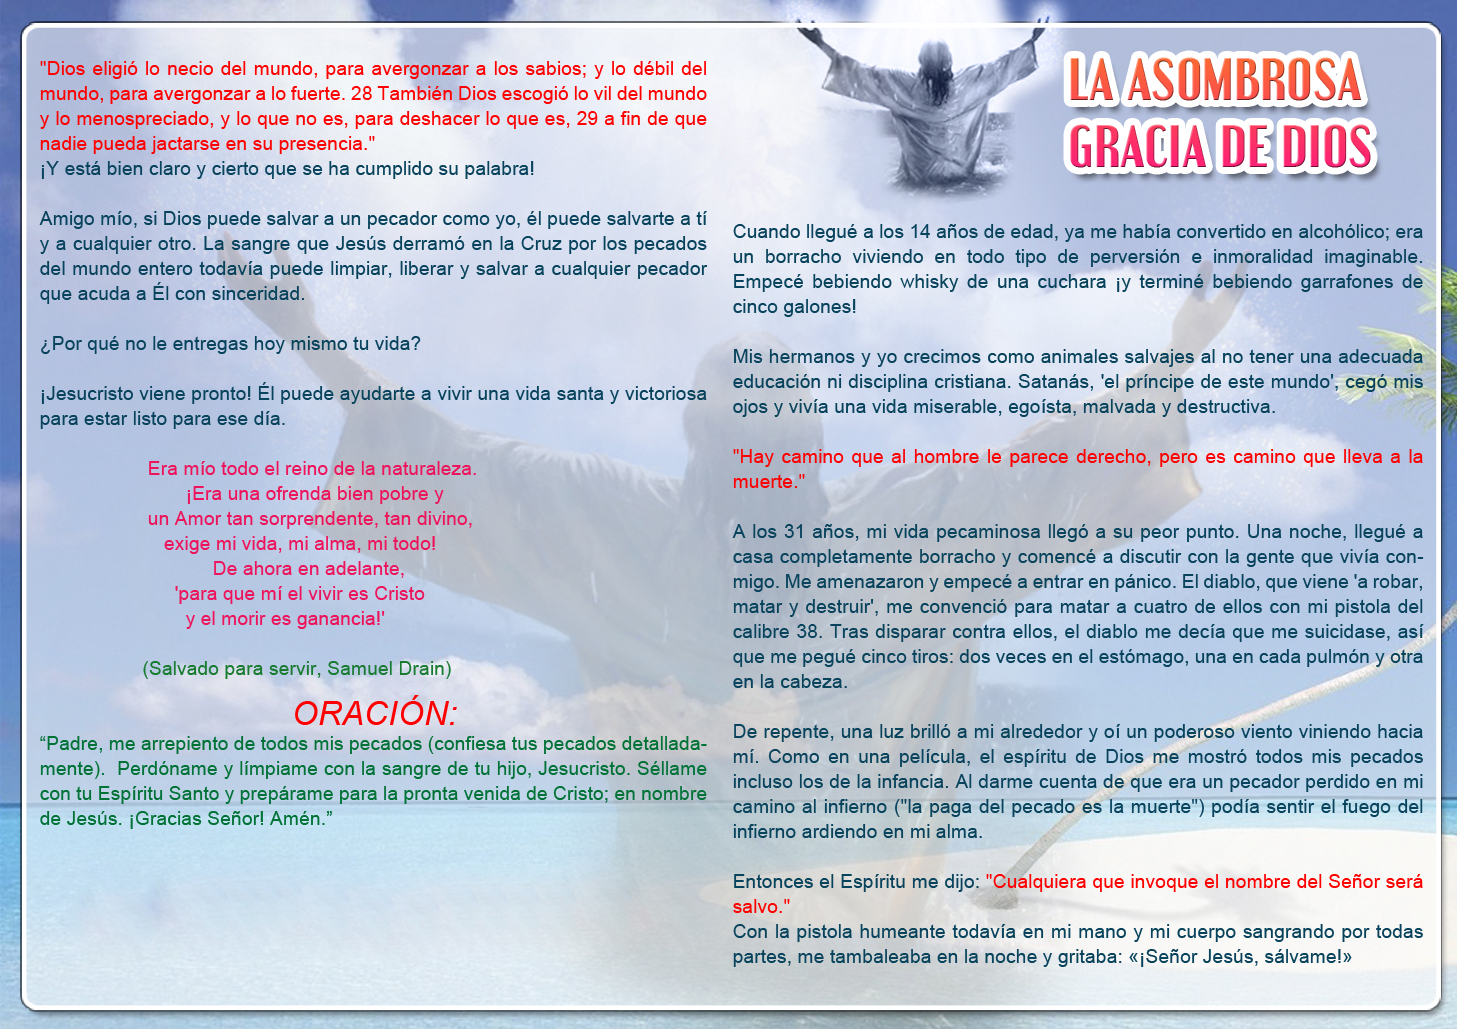 LA ASOMBROSA GRACIA DE DIOS(Spanish-amazing grace of god) - eGospel Tracts